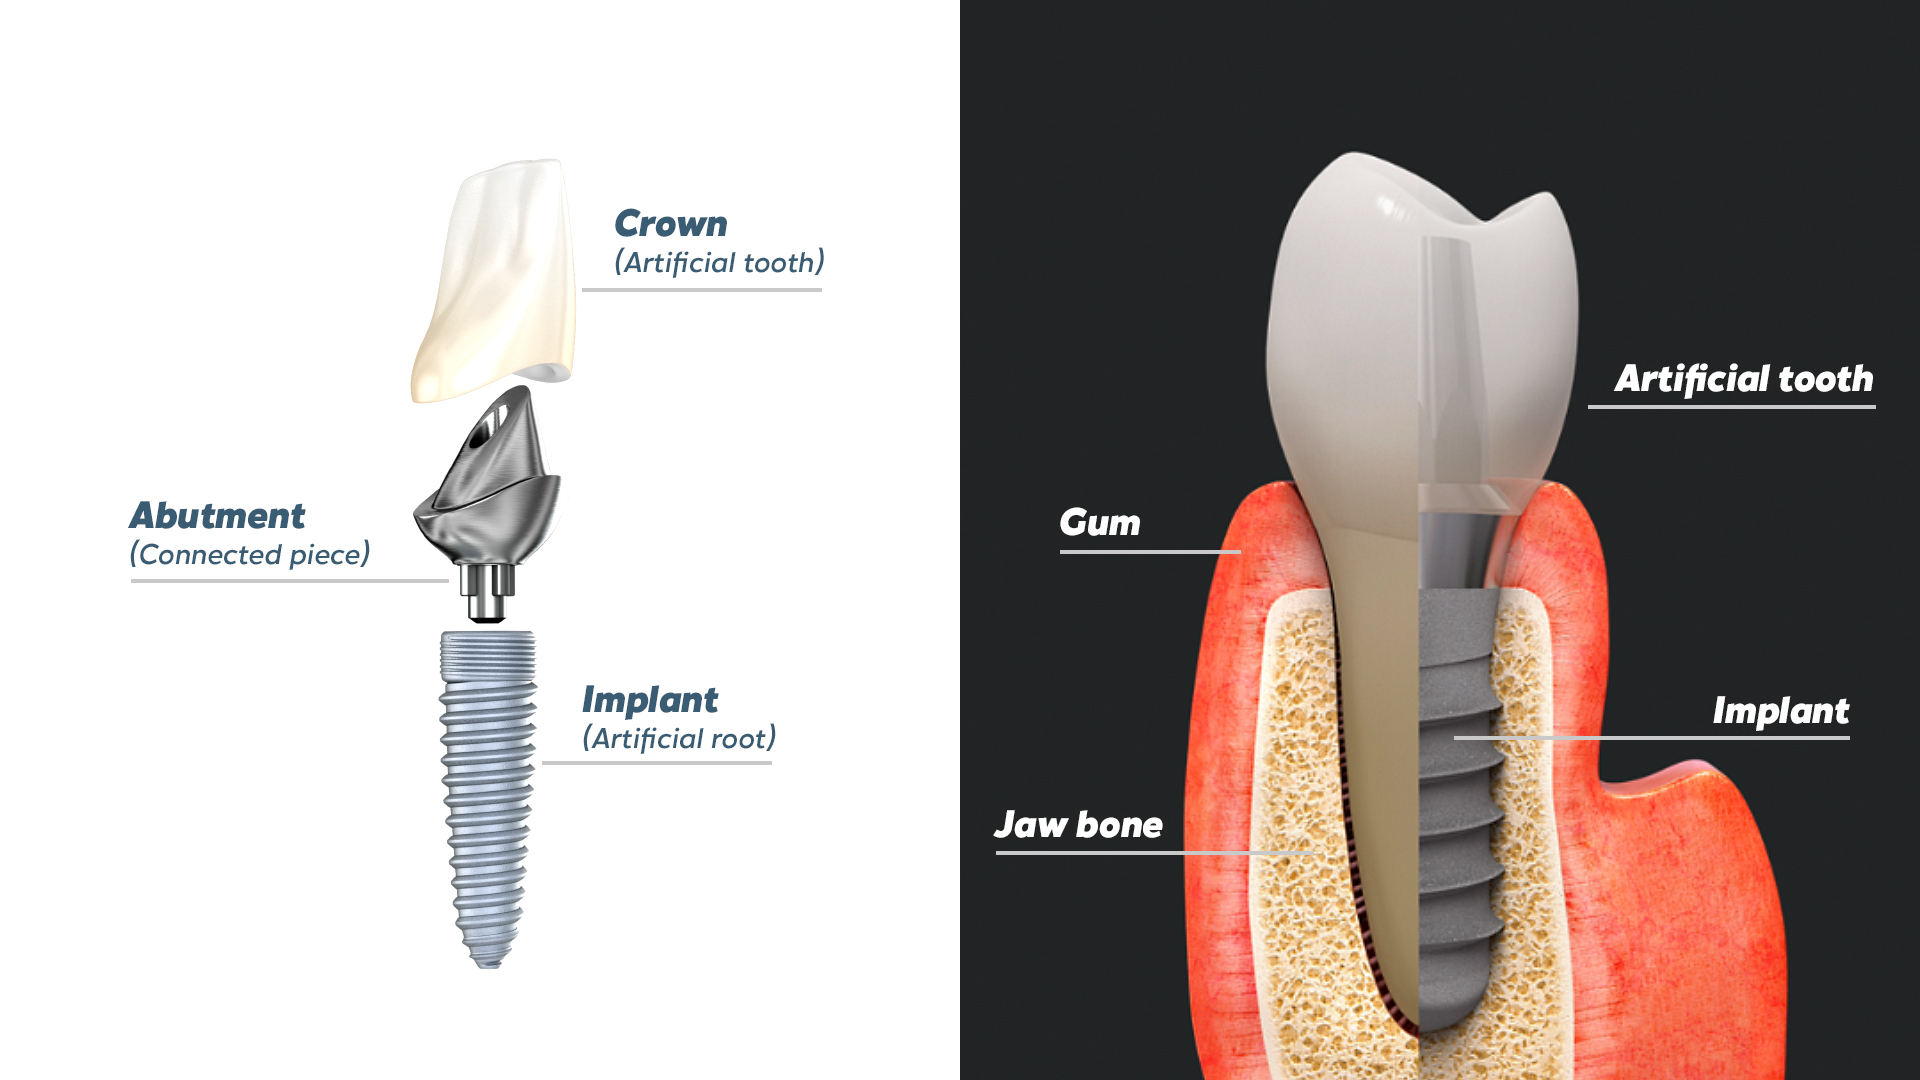 3D modle of a dental implant